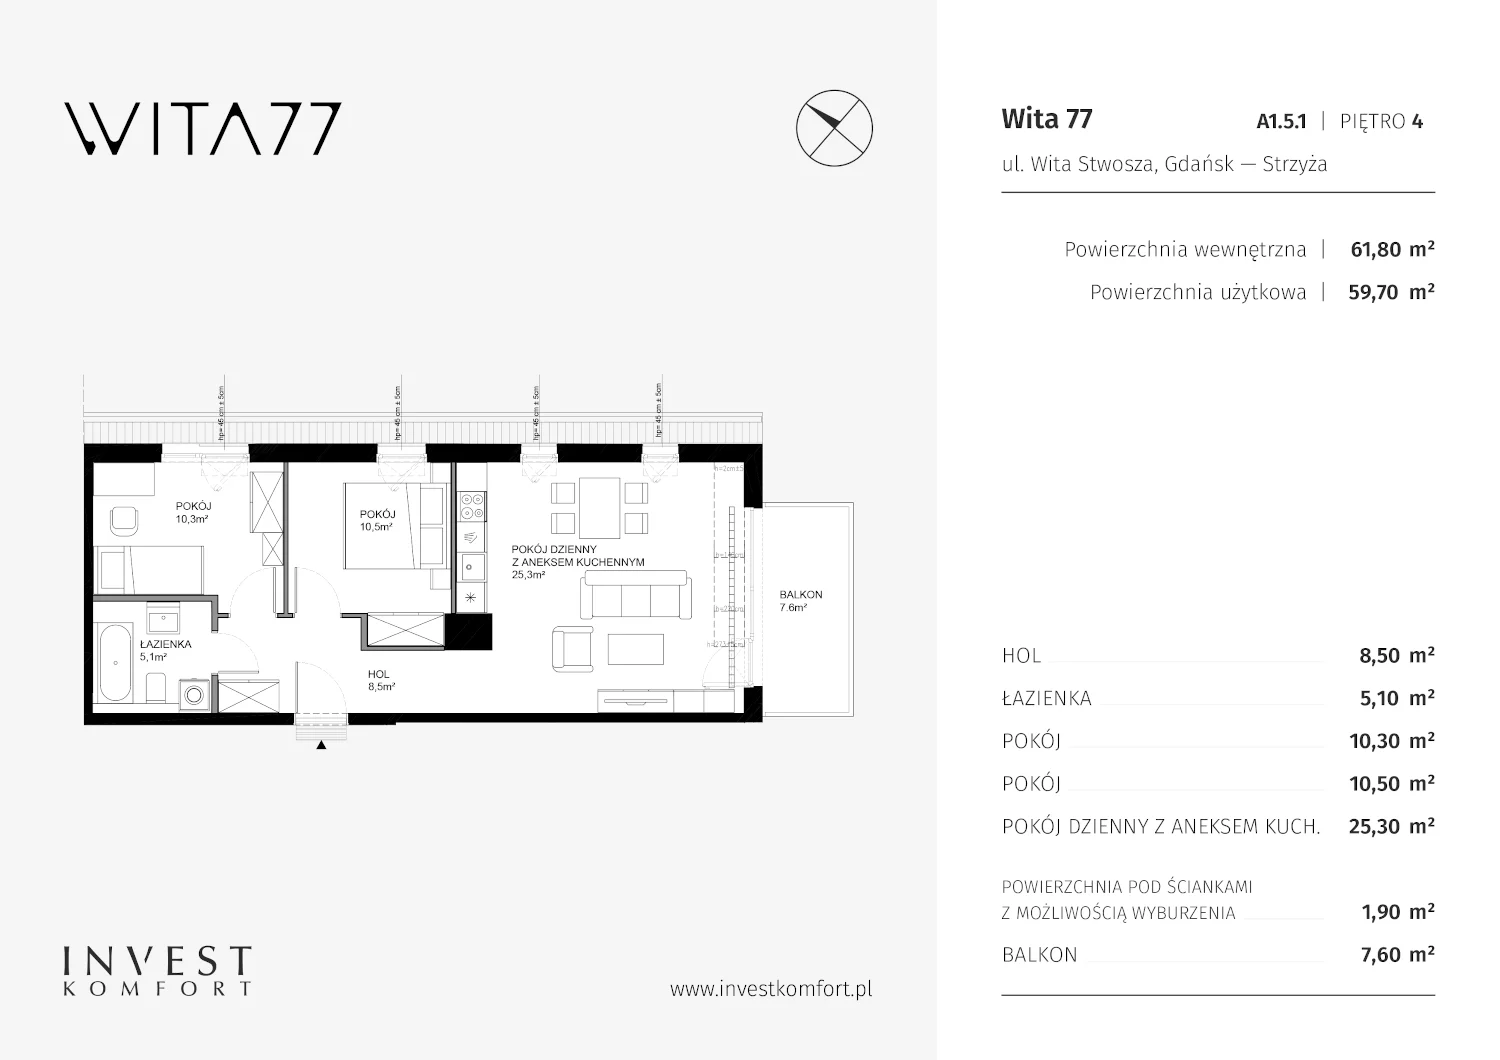 Mieszkanie 61,80 m², piętro 4, oferta nr A1.5.1, Wita 77, Gdańsk, Strzyża, ul. Wita Stwosza 77